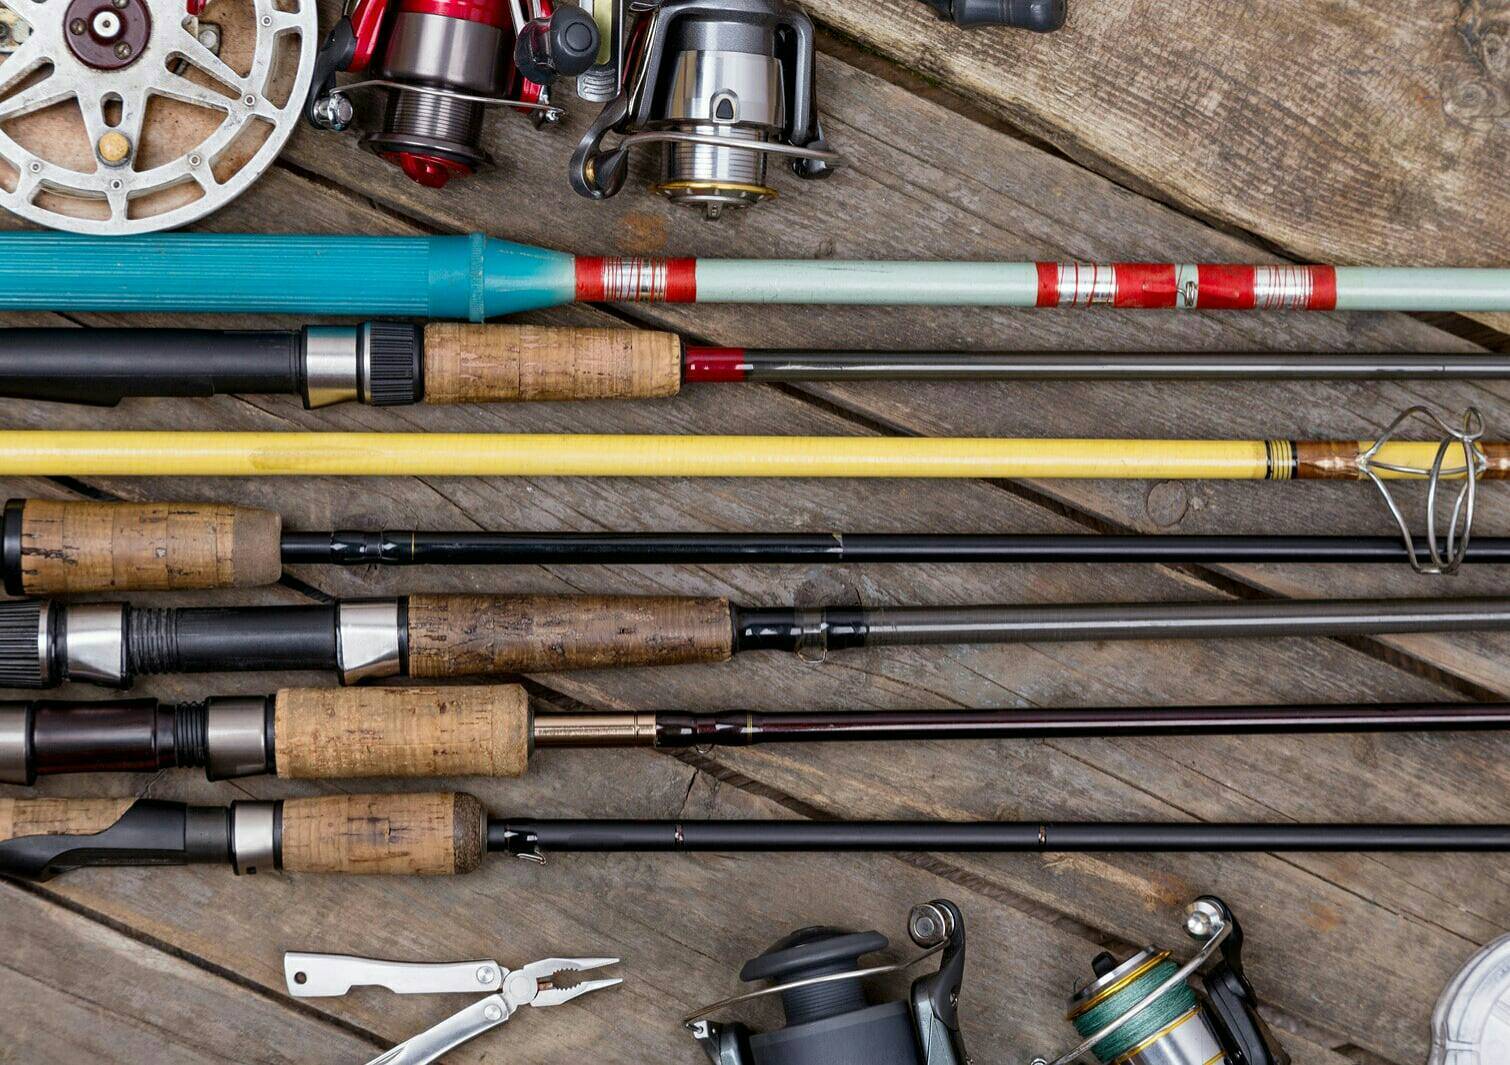 Как выбрать удочку для летней рыбалки для начинающих - рекомендации
как выбрать удочку для летней рыбалки для начинающих - рекомендации